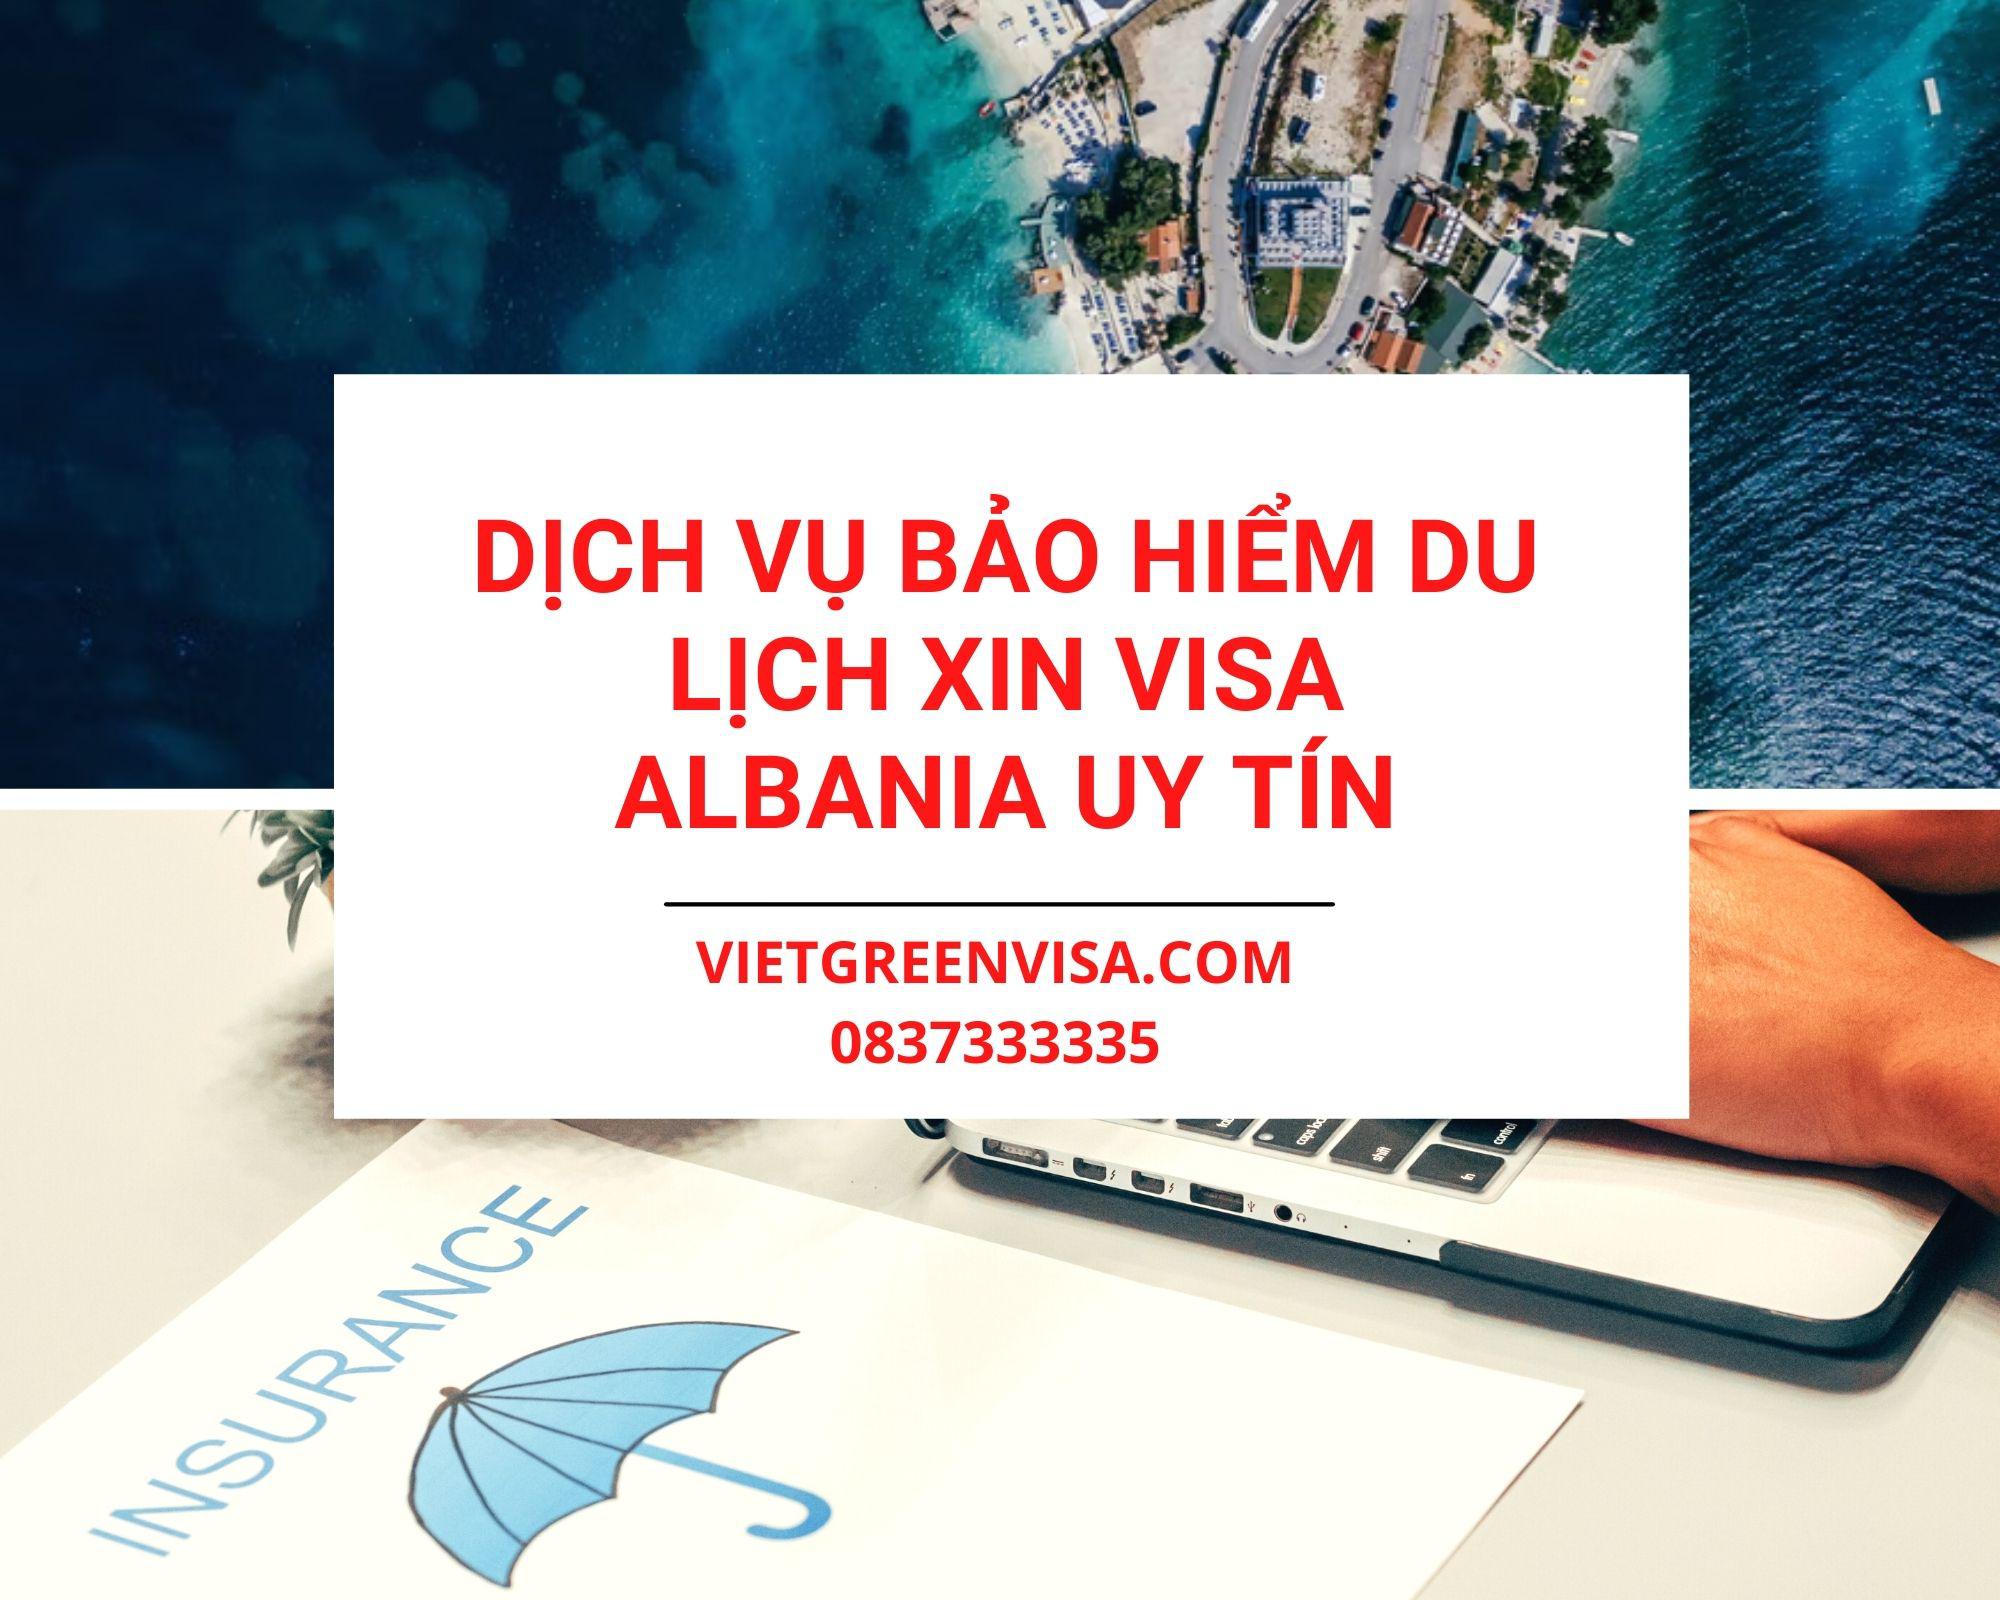 Dịch vụ bảo hiểm du lịch xin visa Albania giá tốt nhất